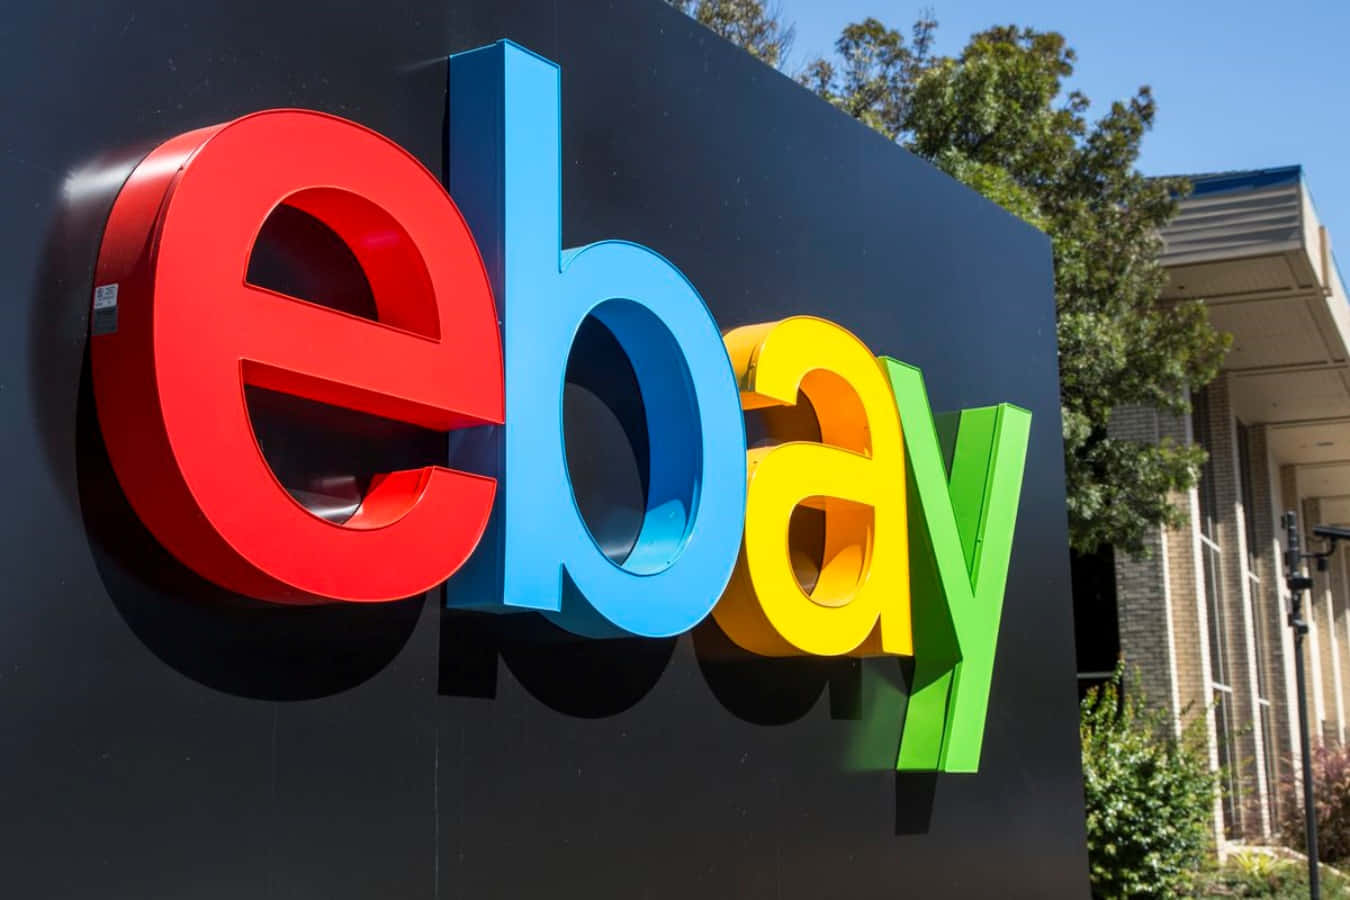 Ebay's Logo Is Seen Outside Of A Building